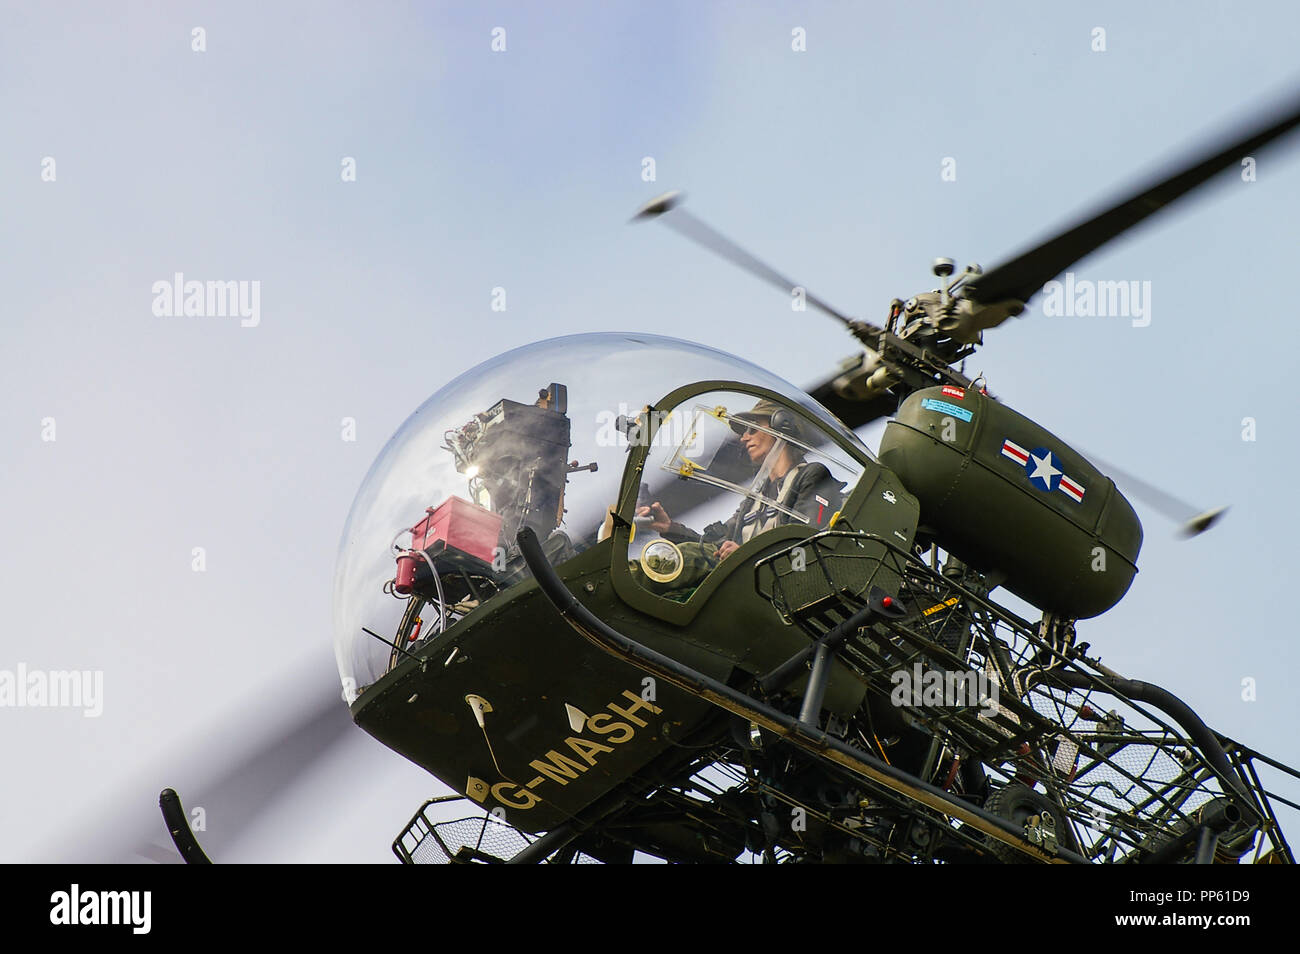 Bell 47G elicottero G-MASH come rappresentante l'elicottero di evacuazione medica utilizzato nel PROGRAMMA televisivo MASH della guerra coreana. Pilota Tracy Martin Foto Stock